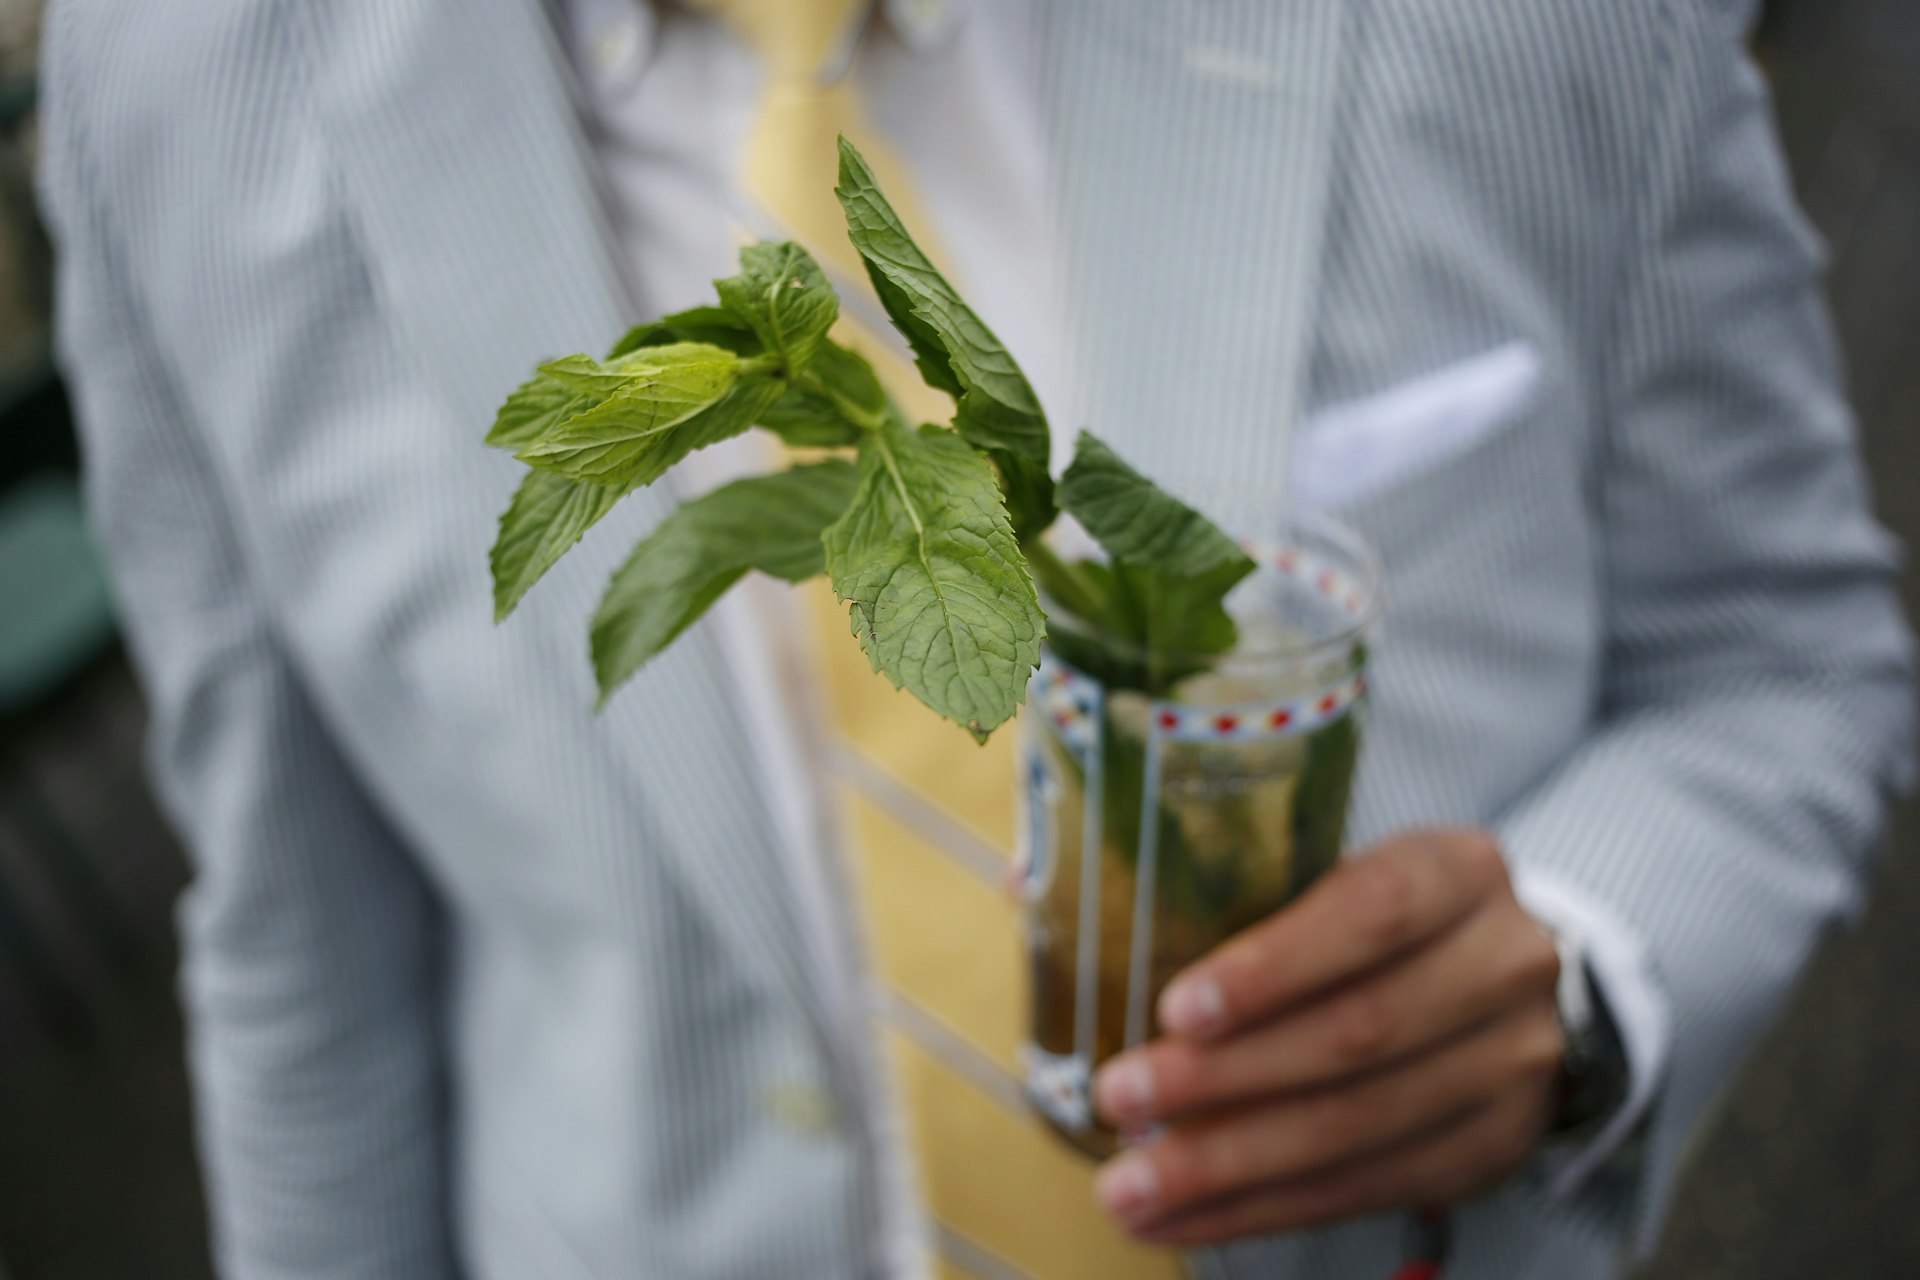 Features - A racegoer holds a mint julep cocktail